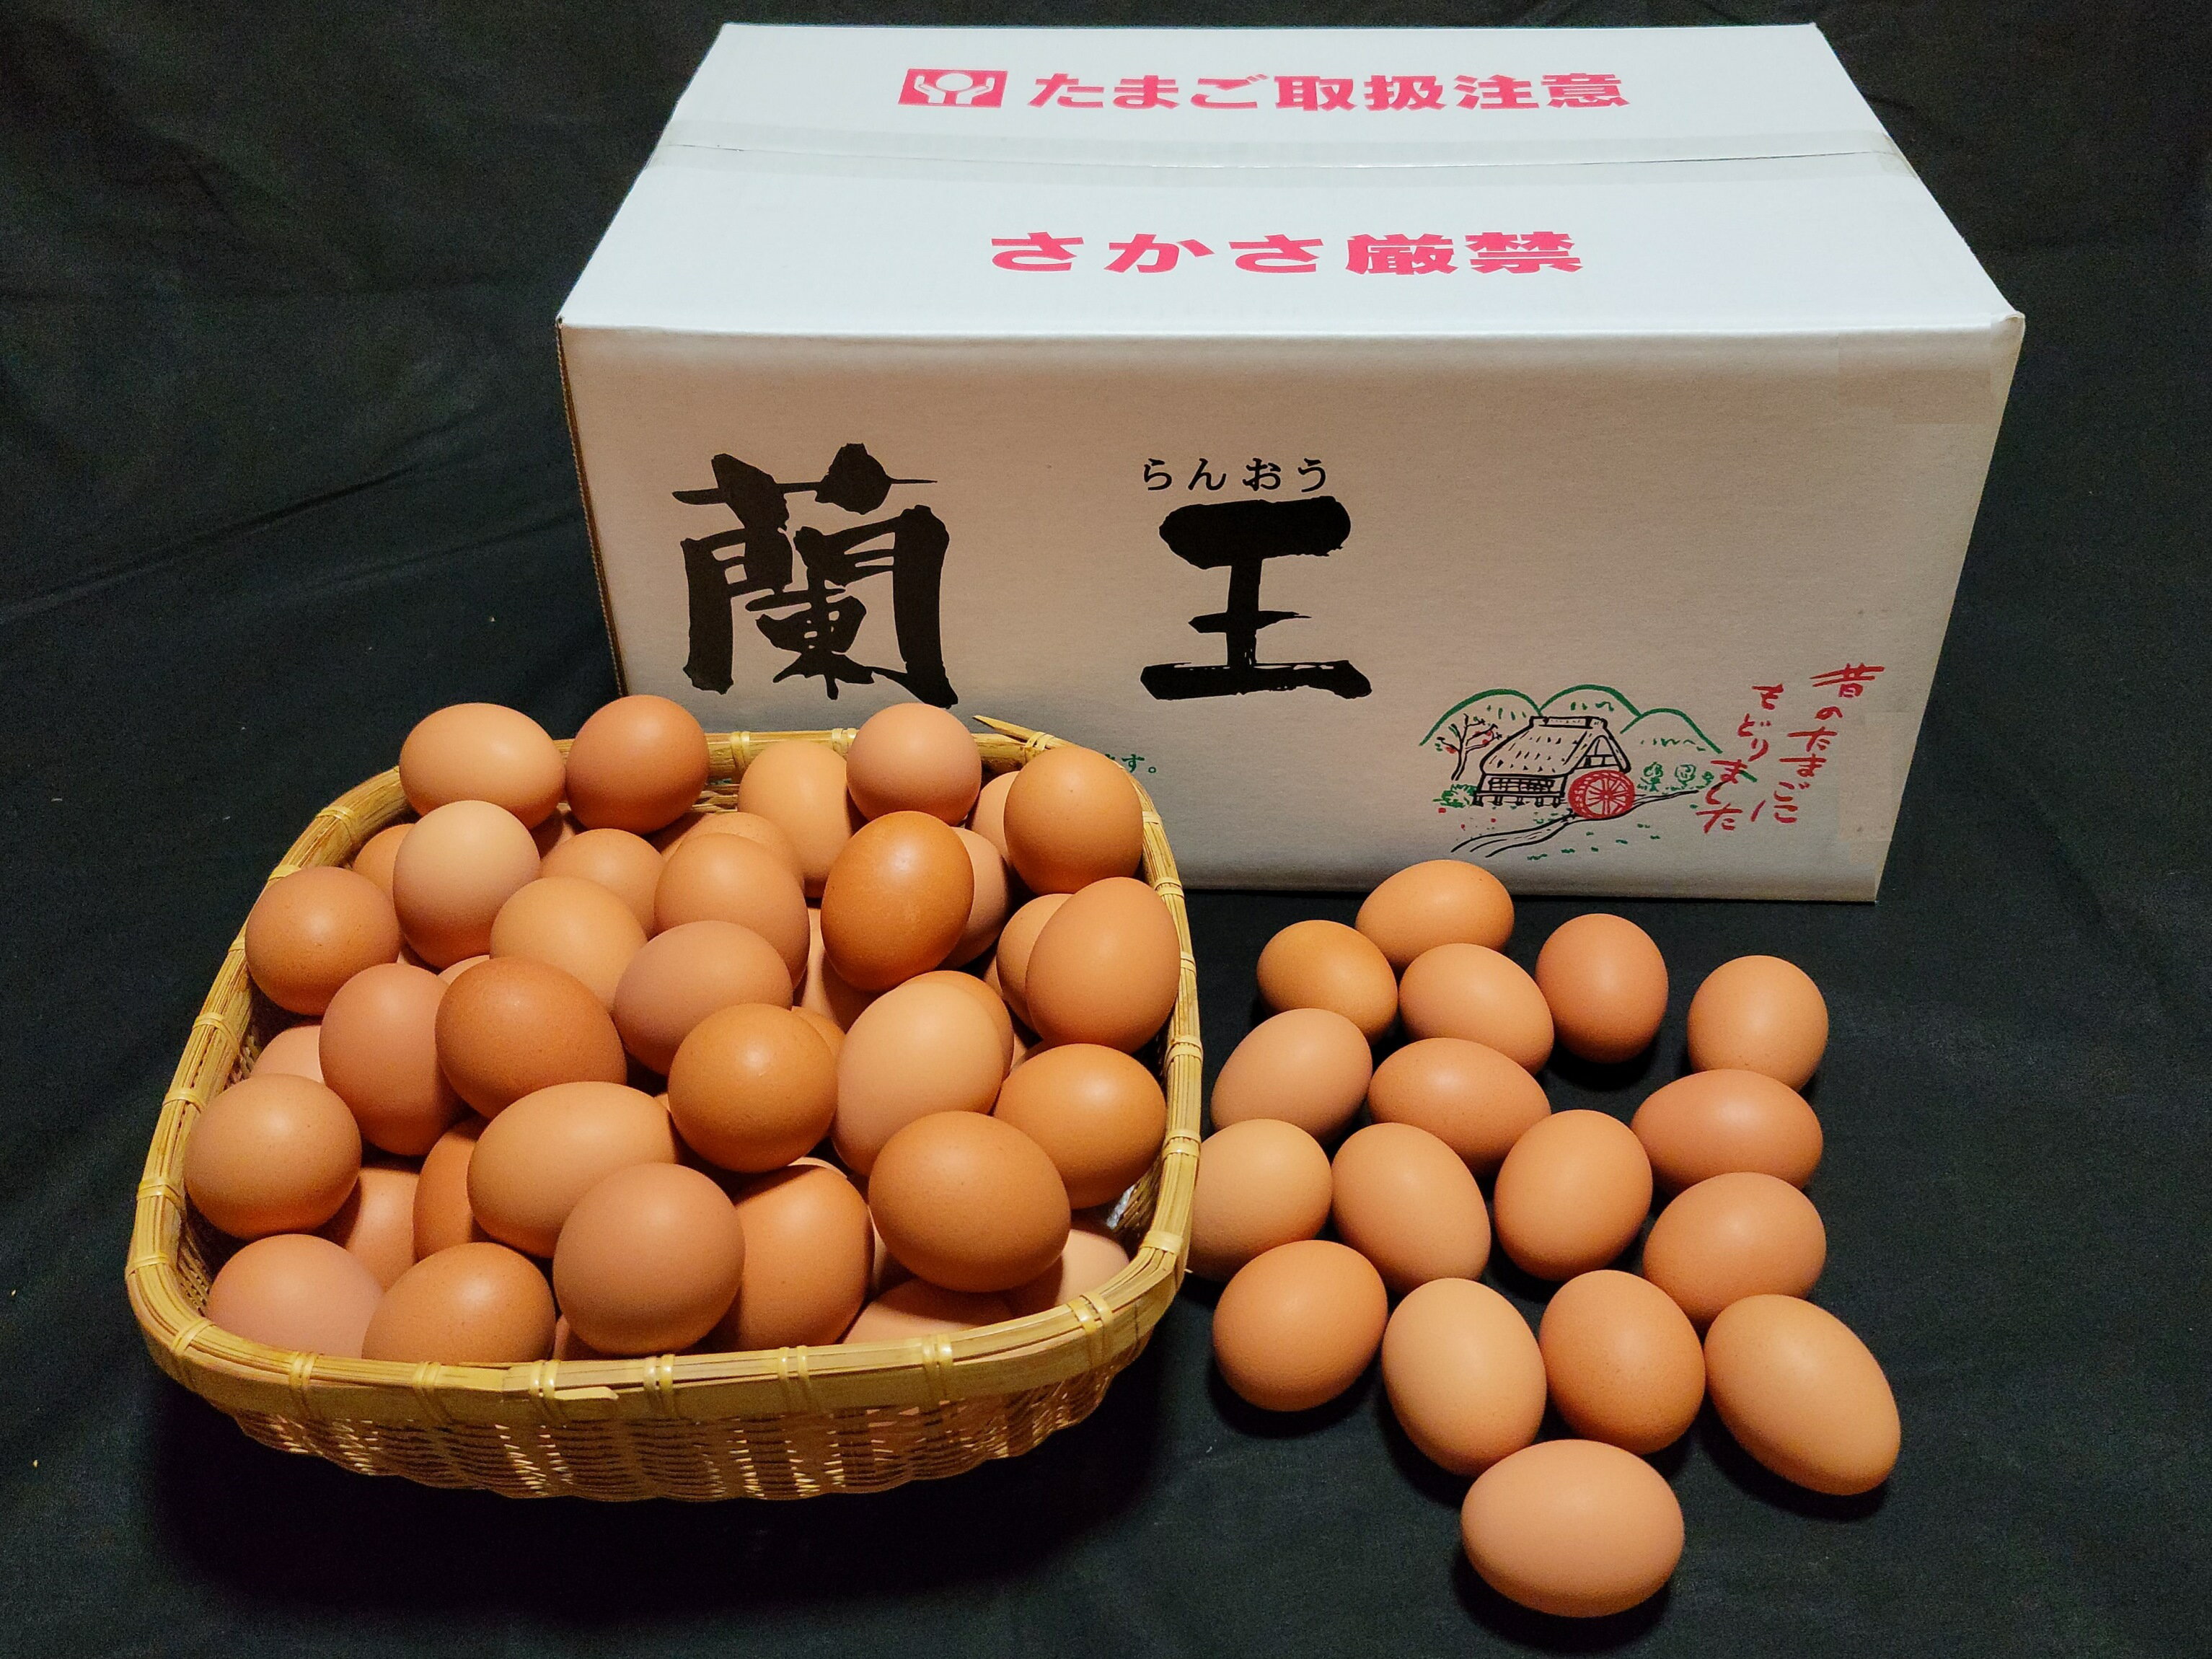 【ふるさと納税】なかにし養鶏場 こだわりの たまご 50個 破損保証5個含む 卵 鶏卵 生卵 国産 福岡県 九州 送料無料